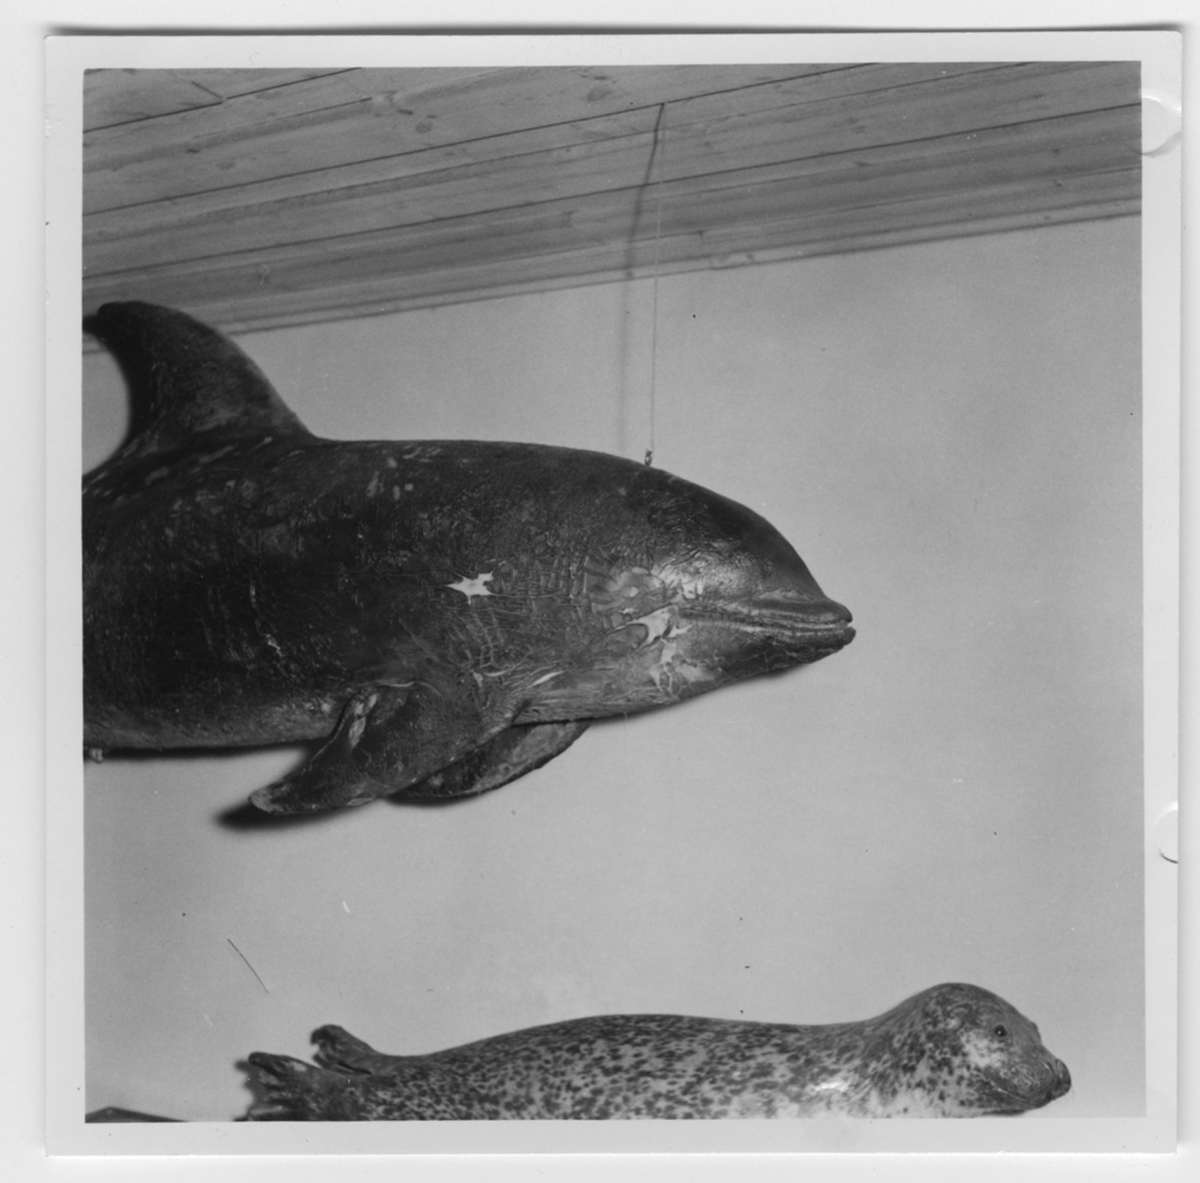 'Delfin och säl hängande i utställningen. Delfinens skinn sprucket. :: Valsalen. :: Se även fotonr. 6964:5 och 11. ::  :: Ingår i serie med fotonr. 6964:1-11.'